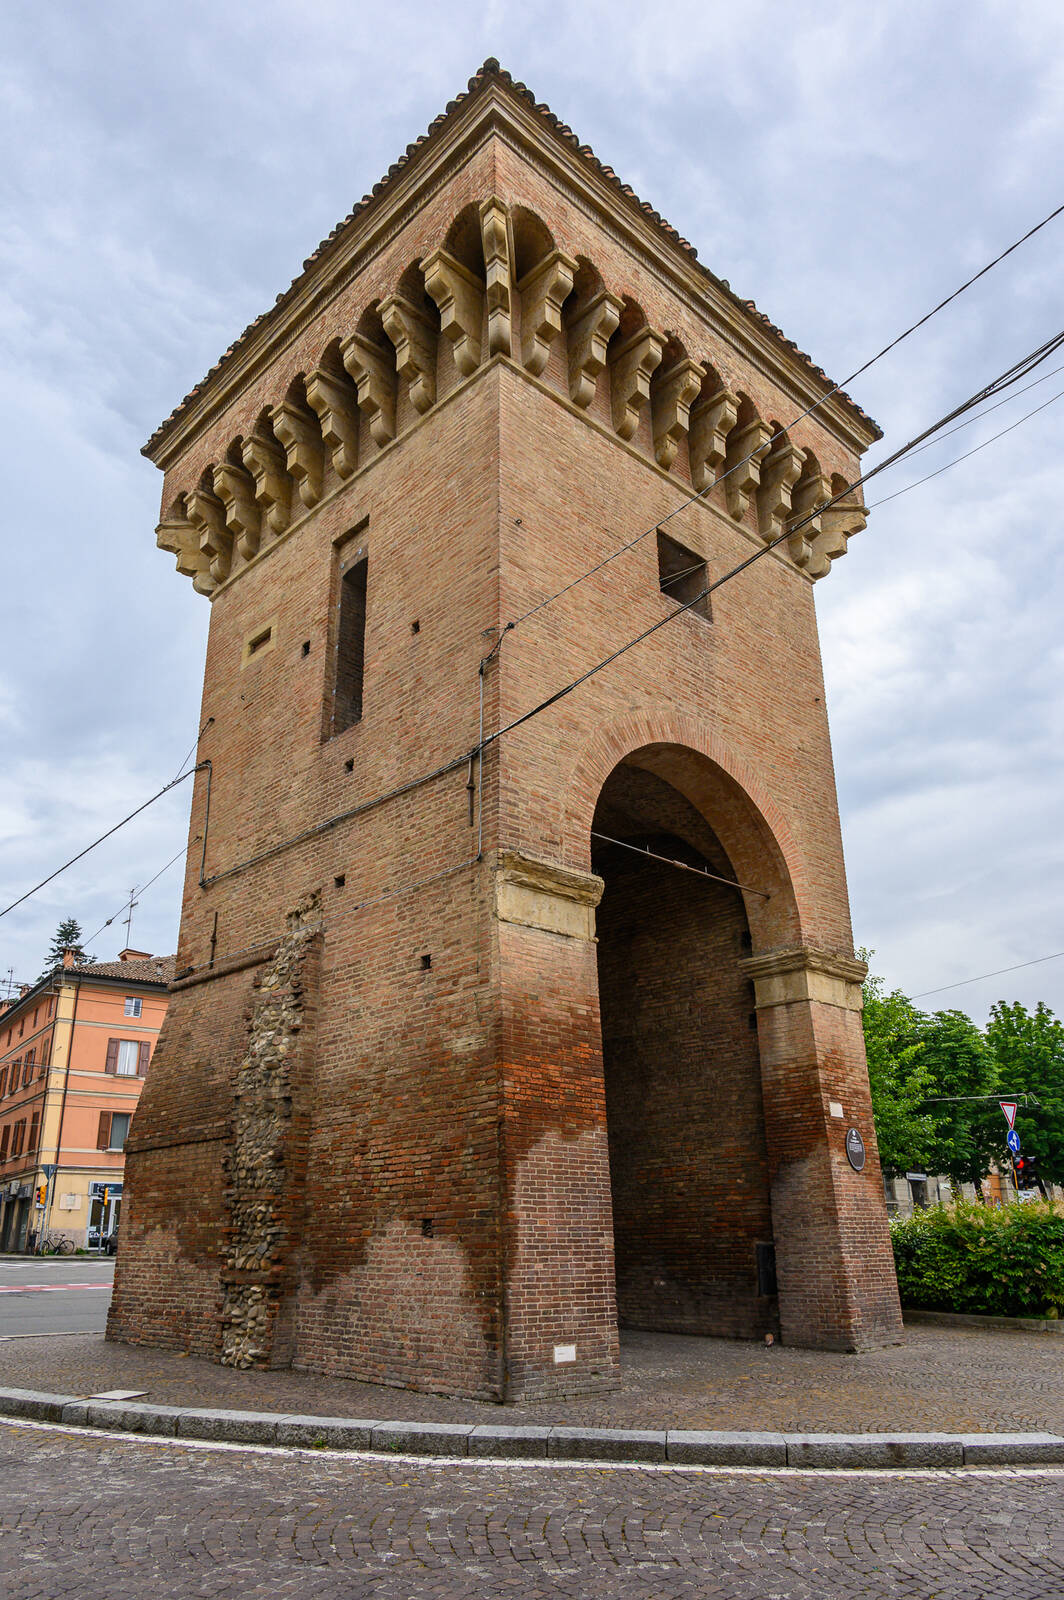 Image of Porta Castiglione by Sue Wolfe